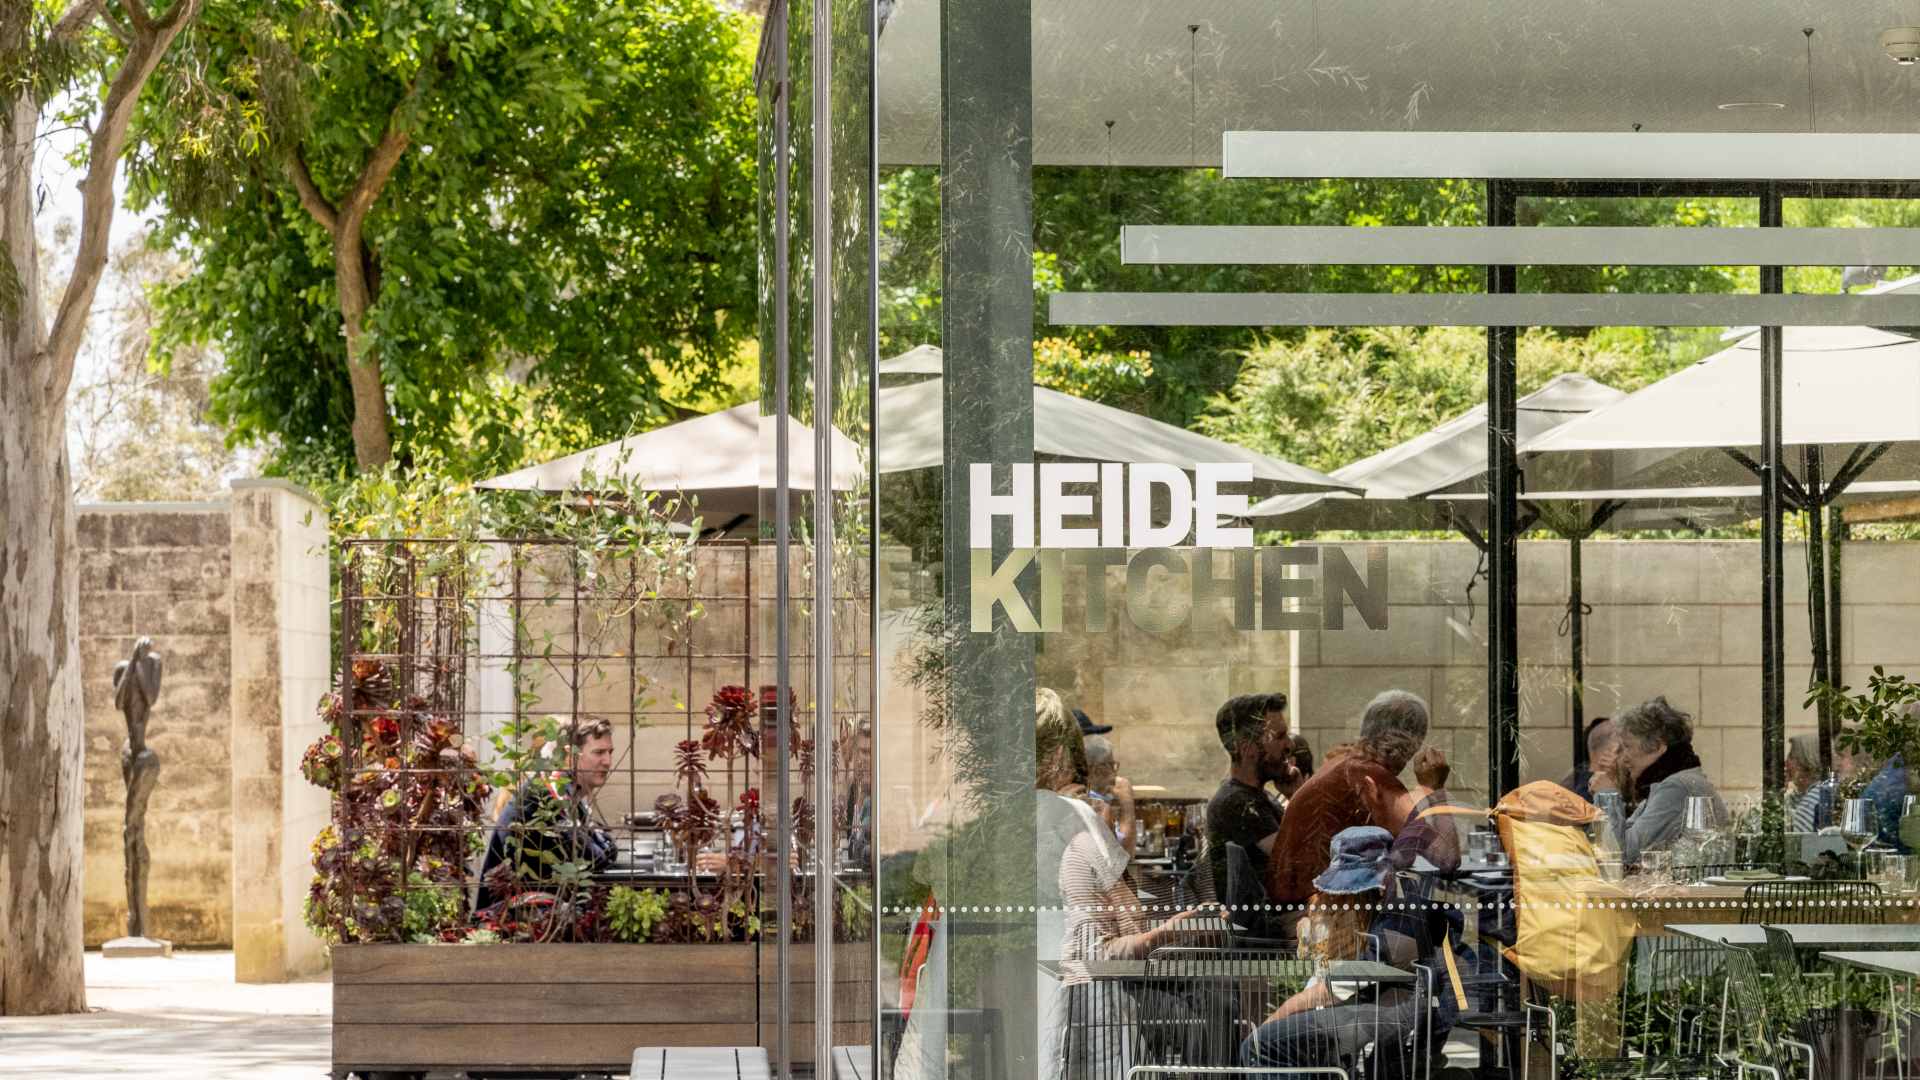 Heide Kitchen